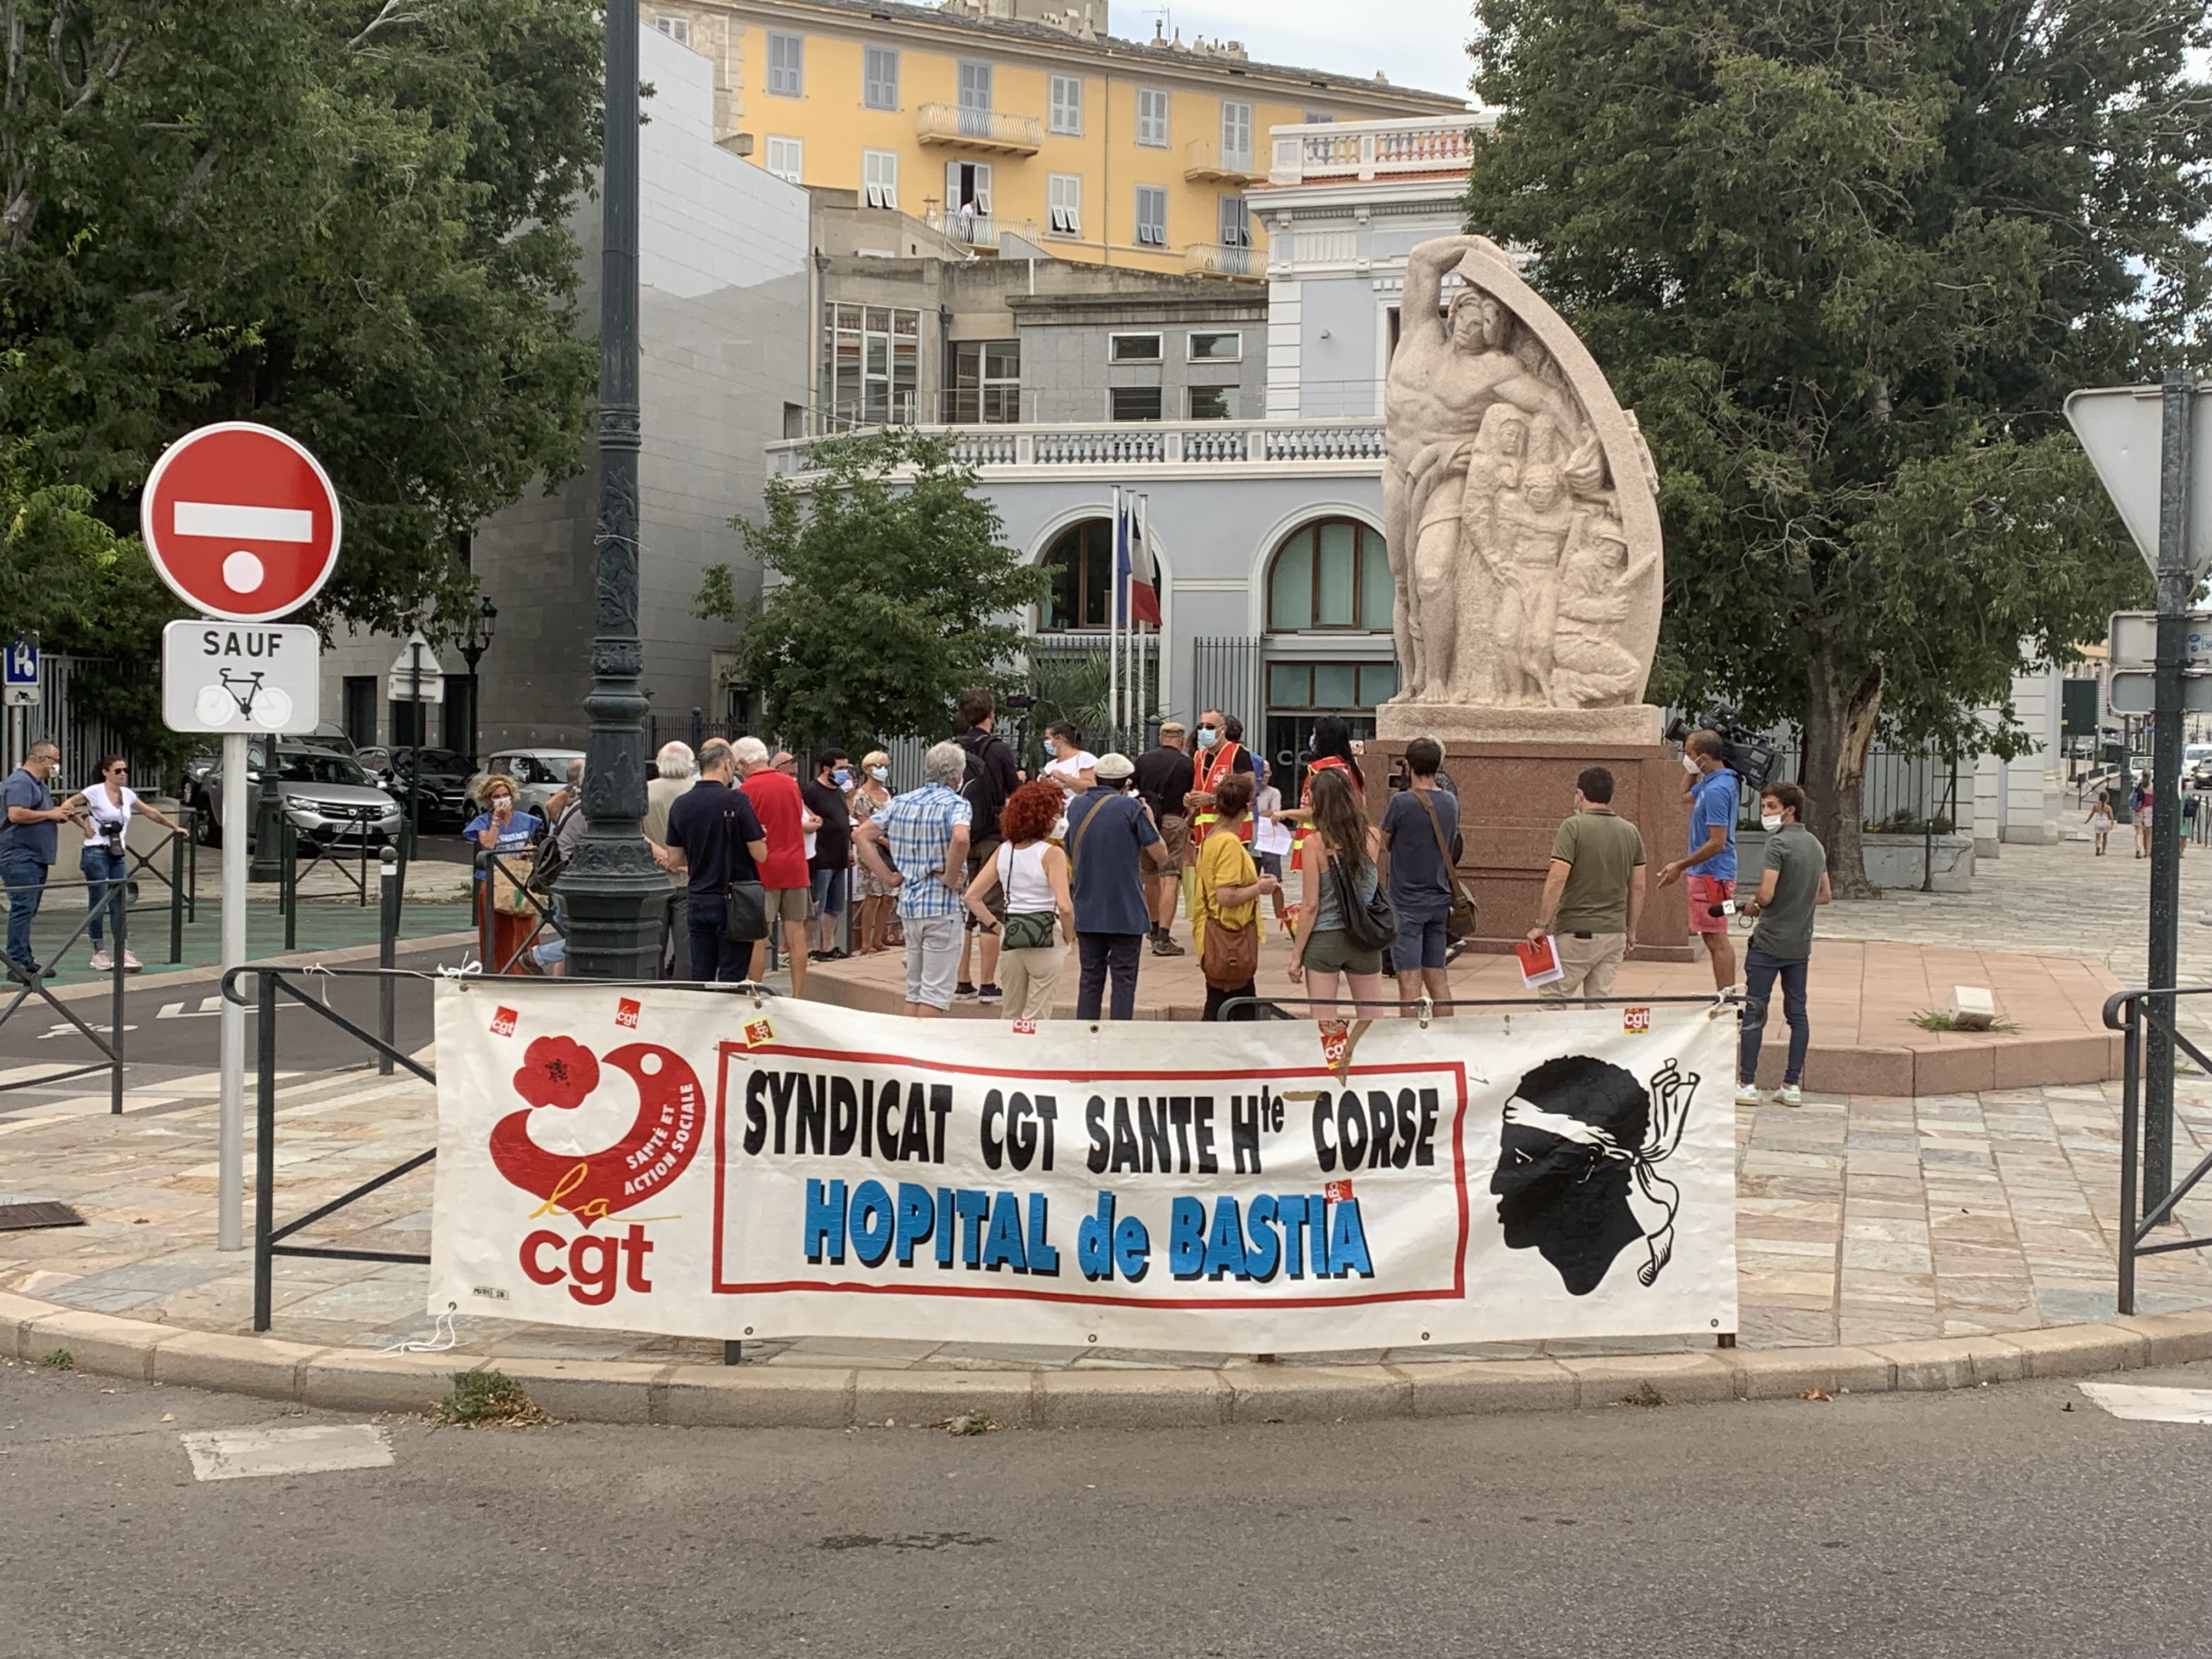 Pass sanitaire, obligation vaccinale... A Bastia, la CGT fait de la résistance